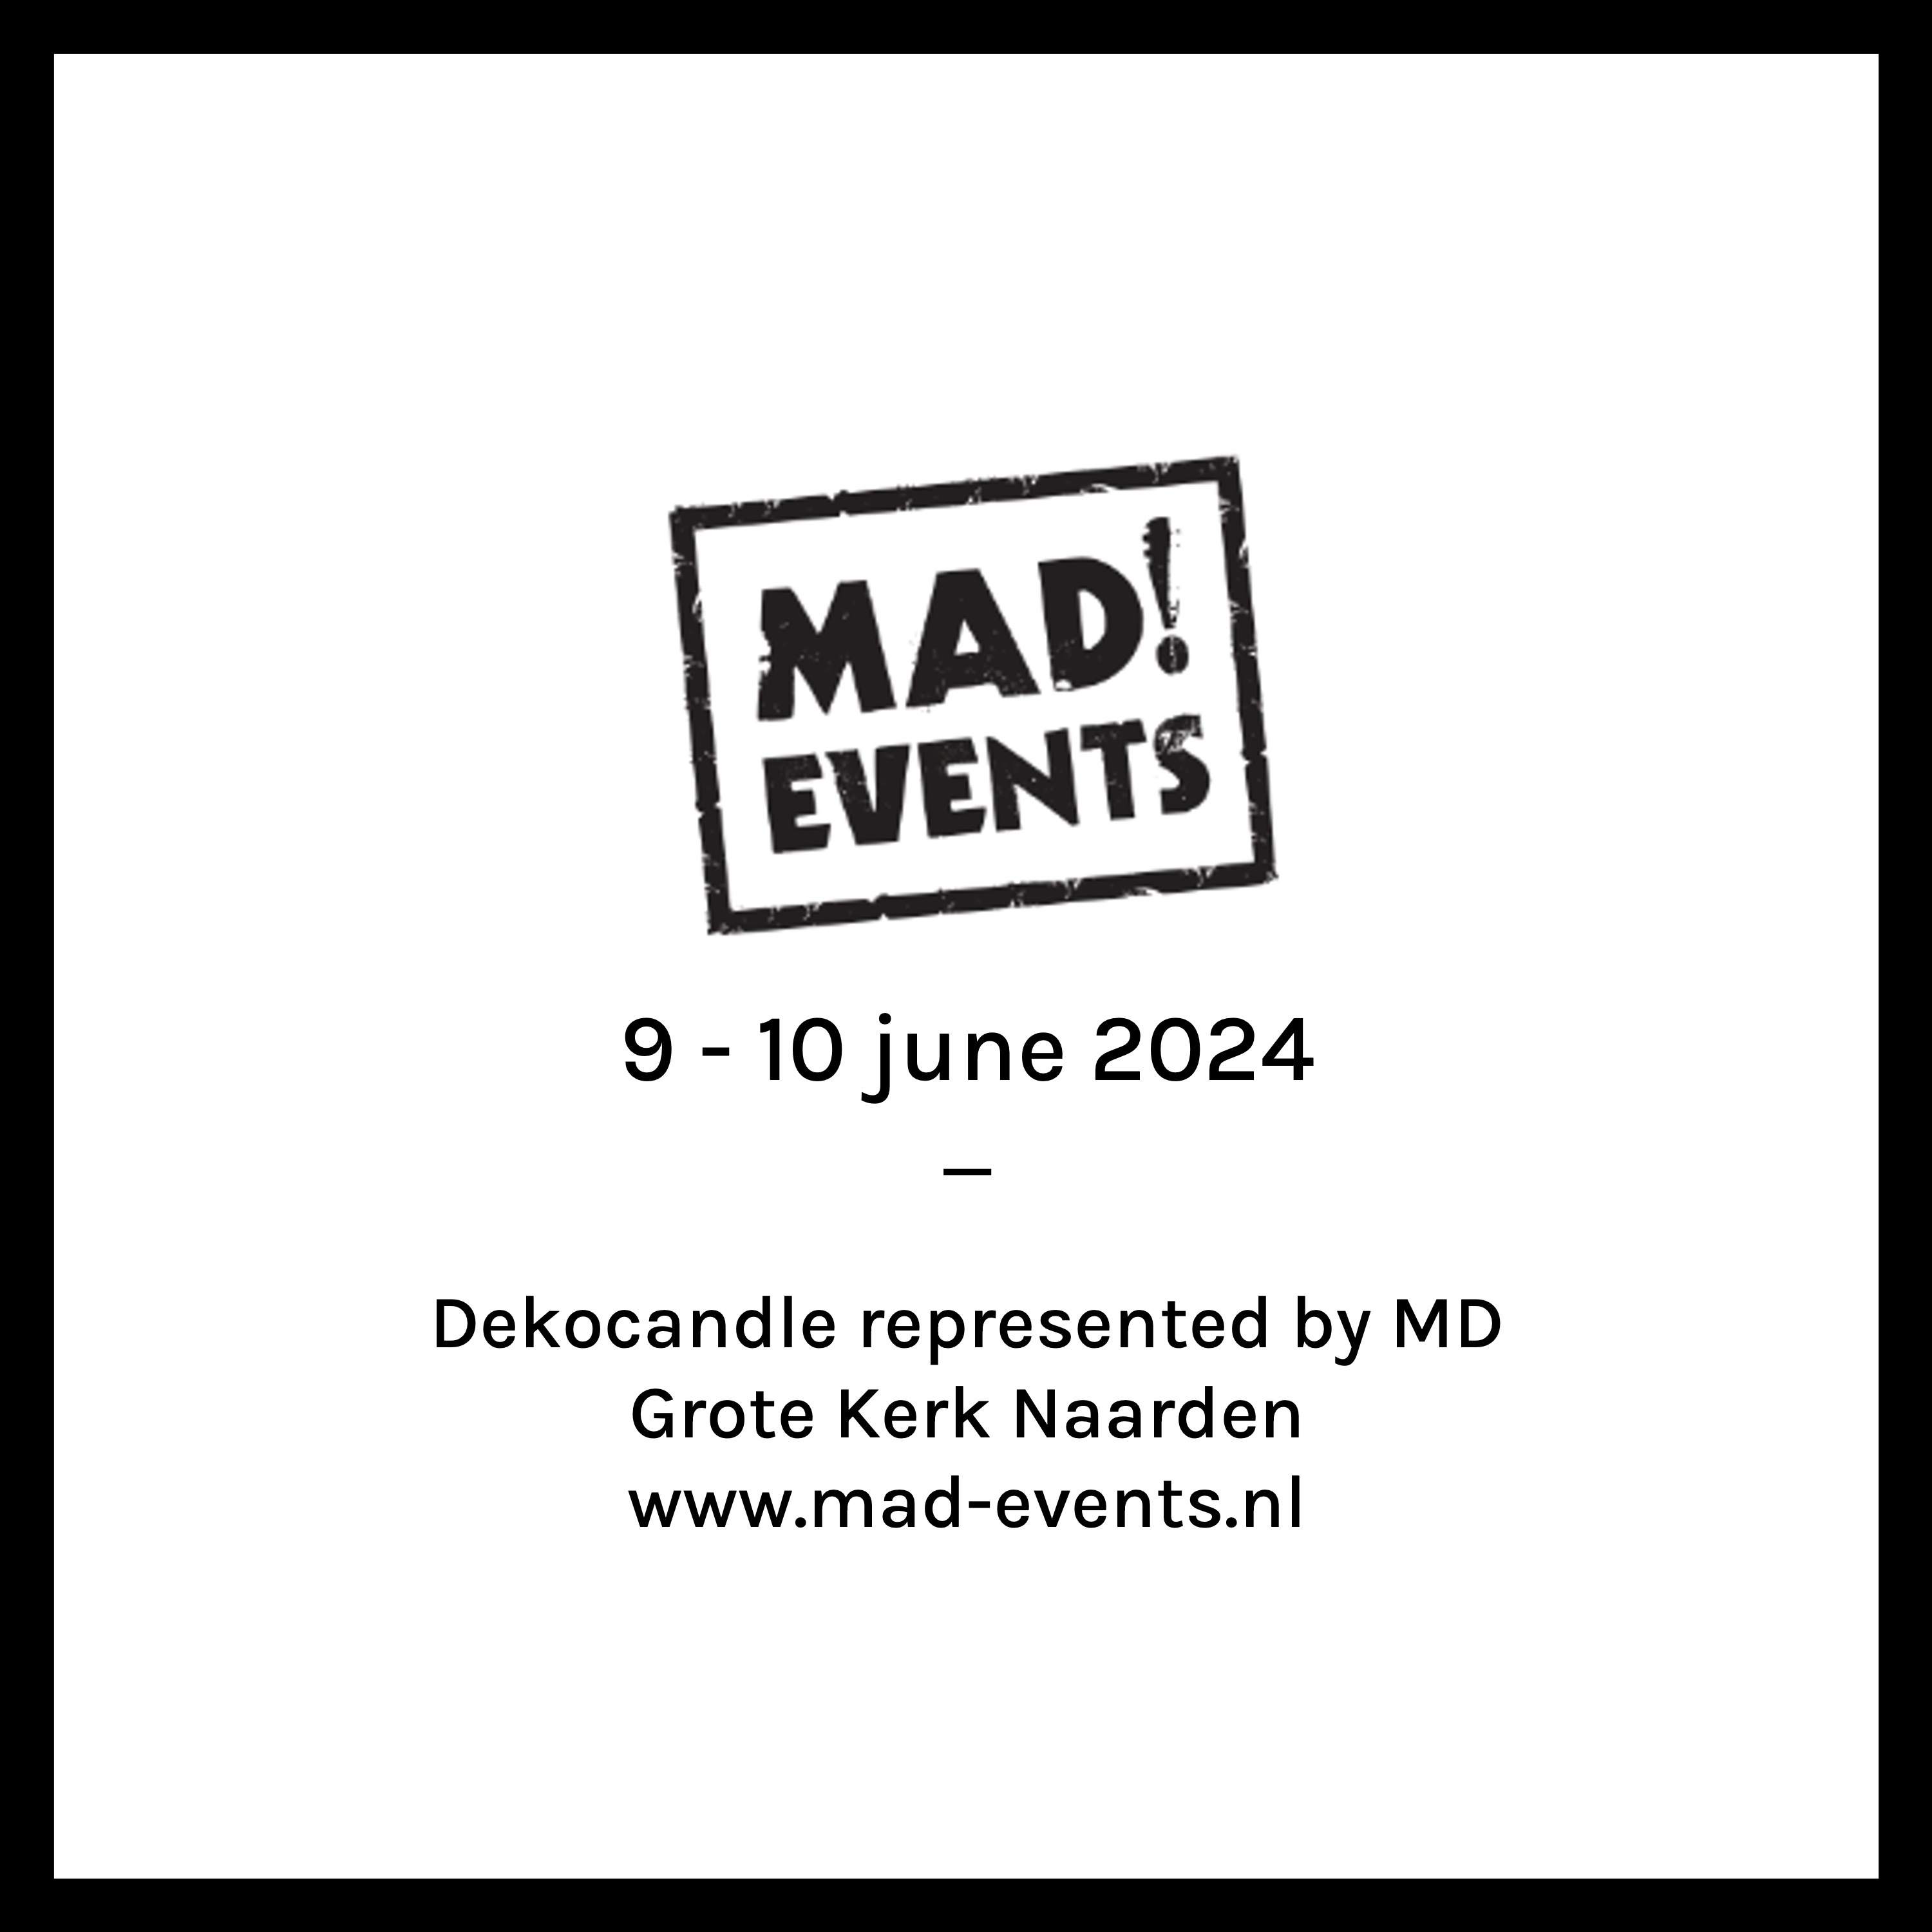 MAD! EVENTS / Grote Kerk Naarden / Nederland